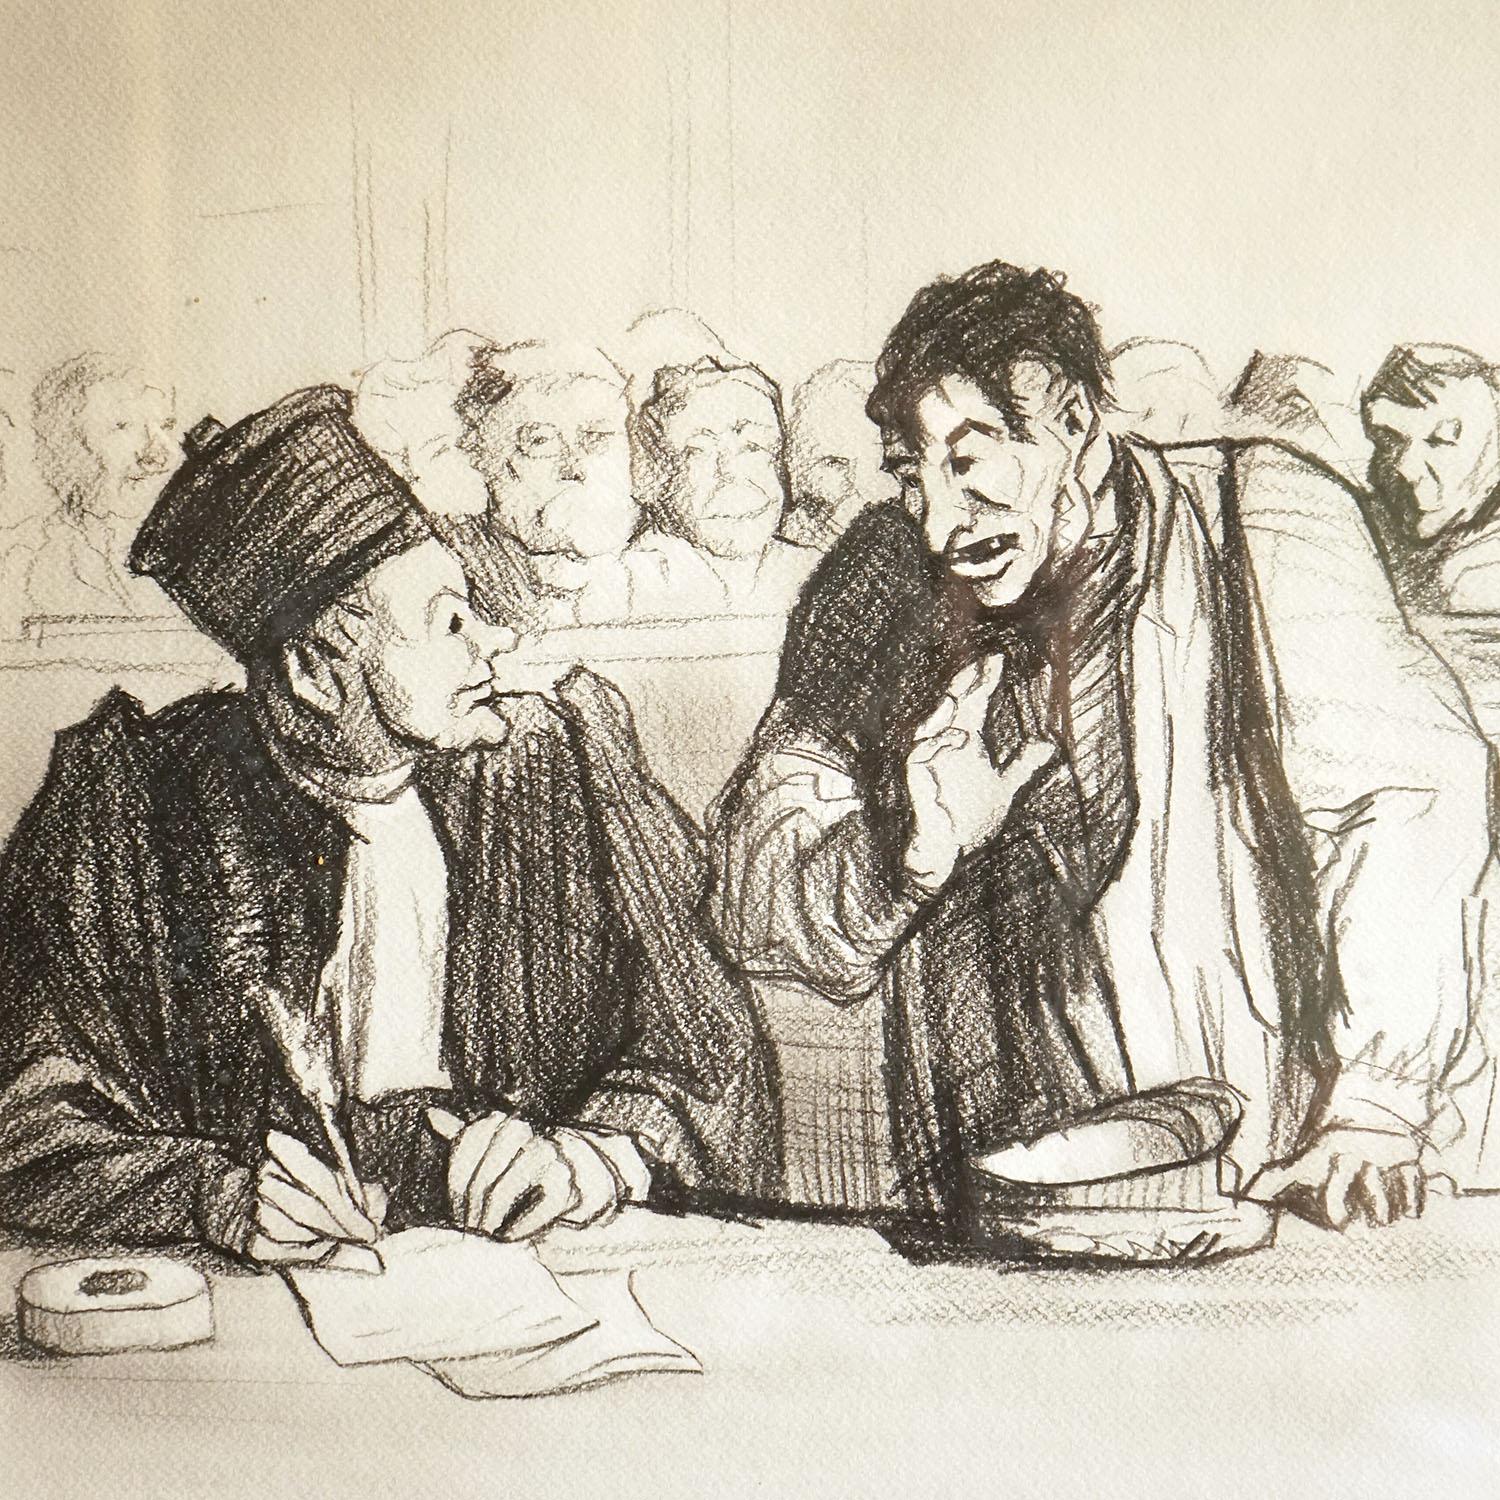 Vintage Original Bleistift und Kohlestudie

Eine Zeichnung nach dem Originalwerk von Honoré Daumier, Franzose (1808-1879).  

Das Original, das die Nr. 3 der Reihe 